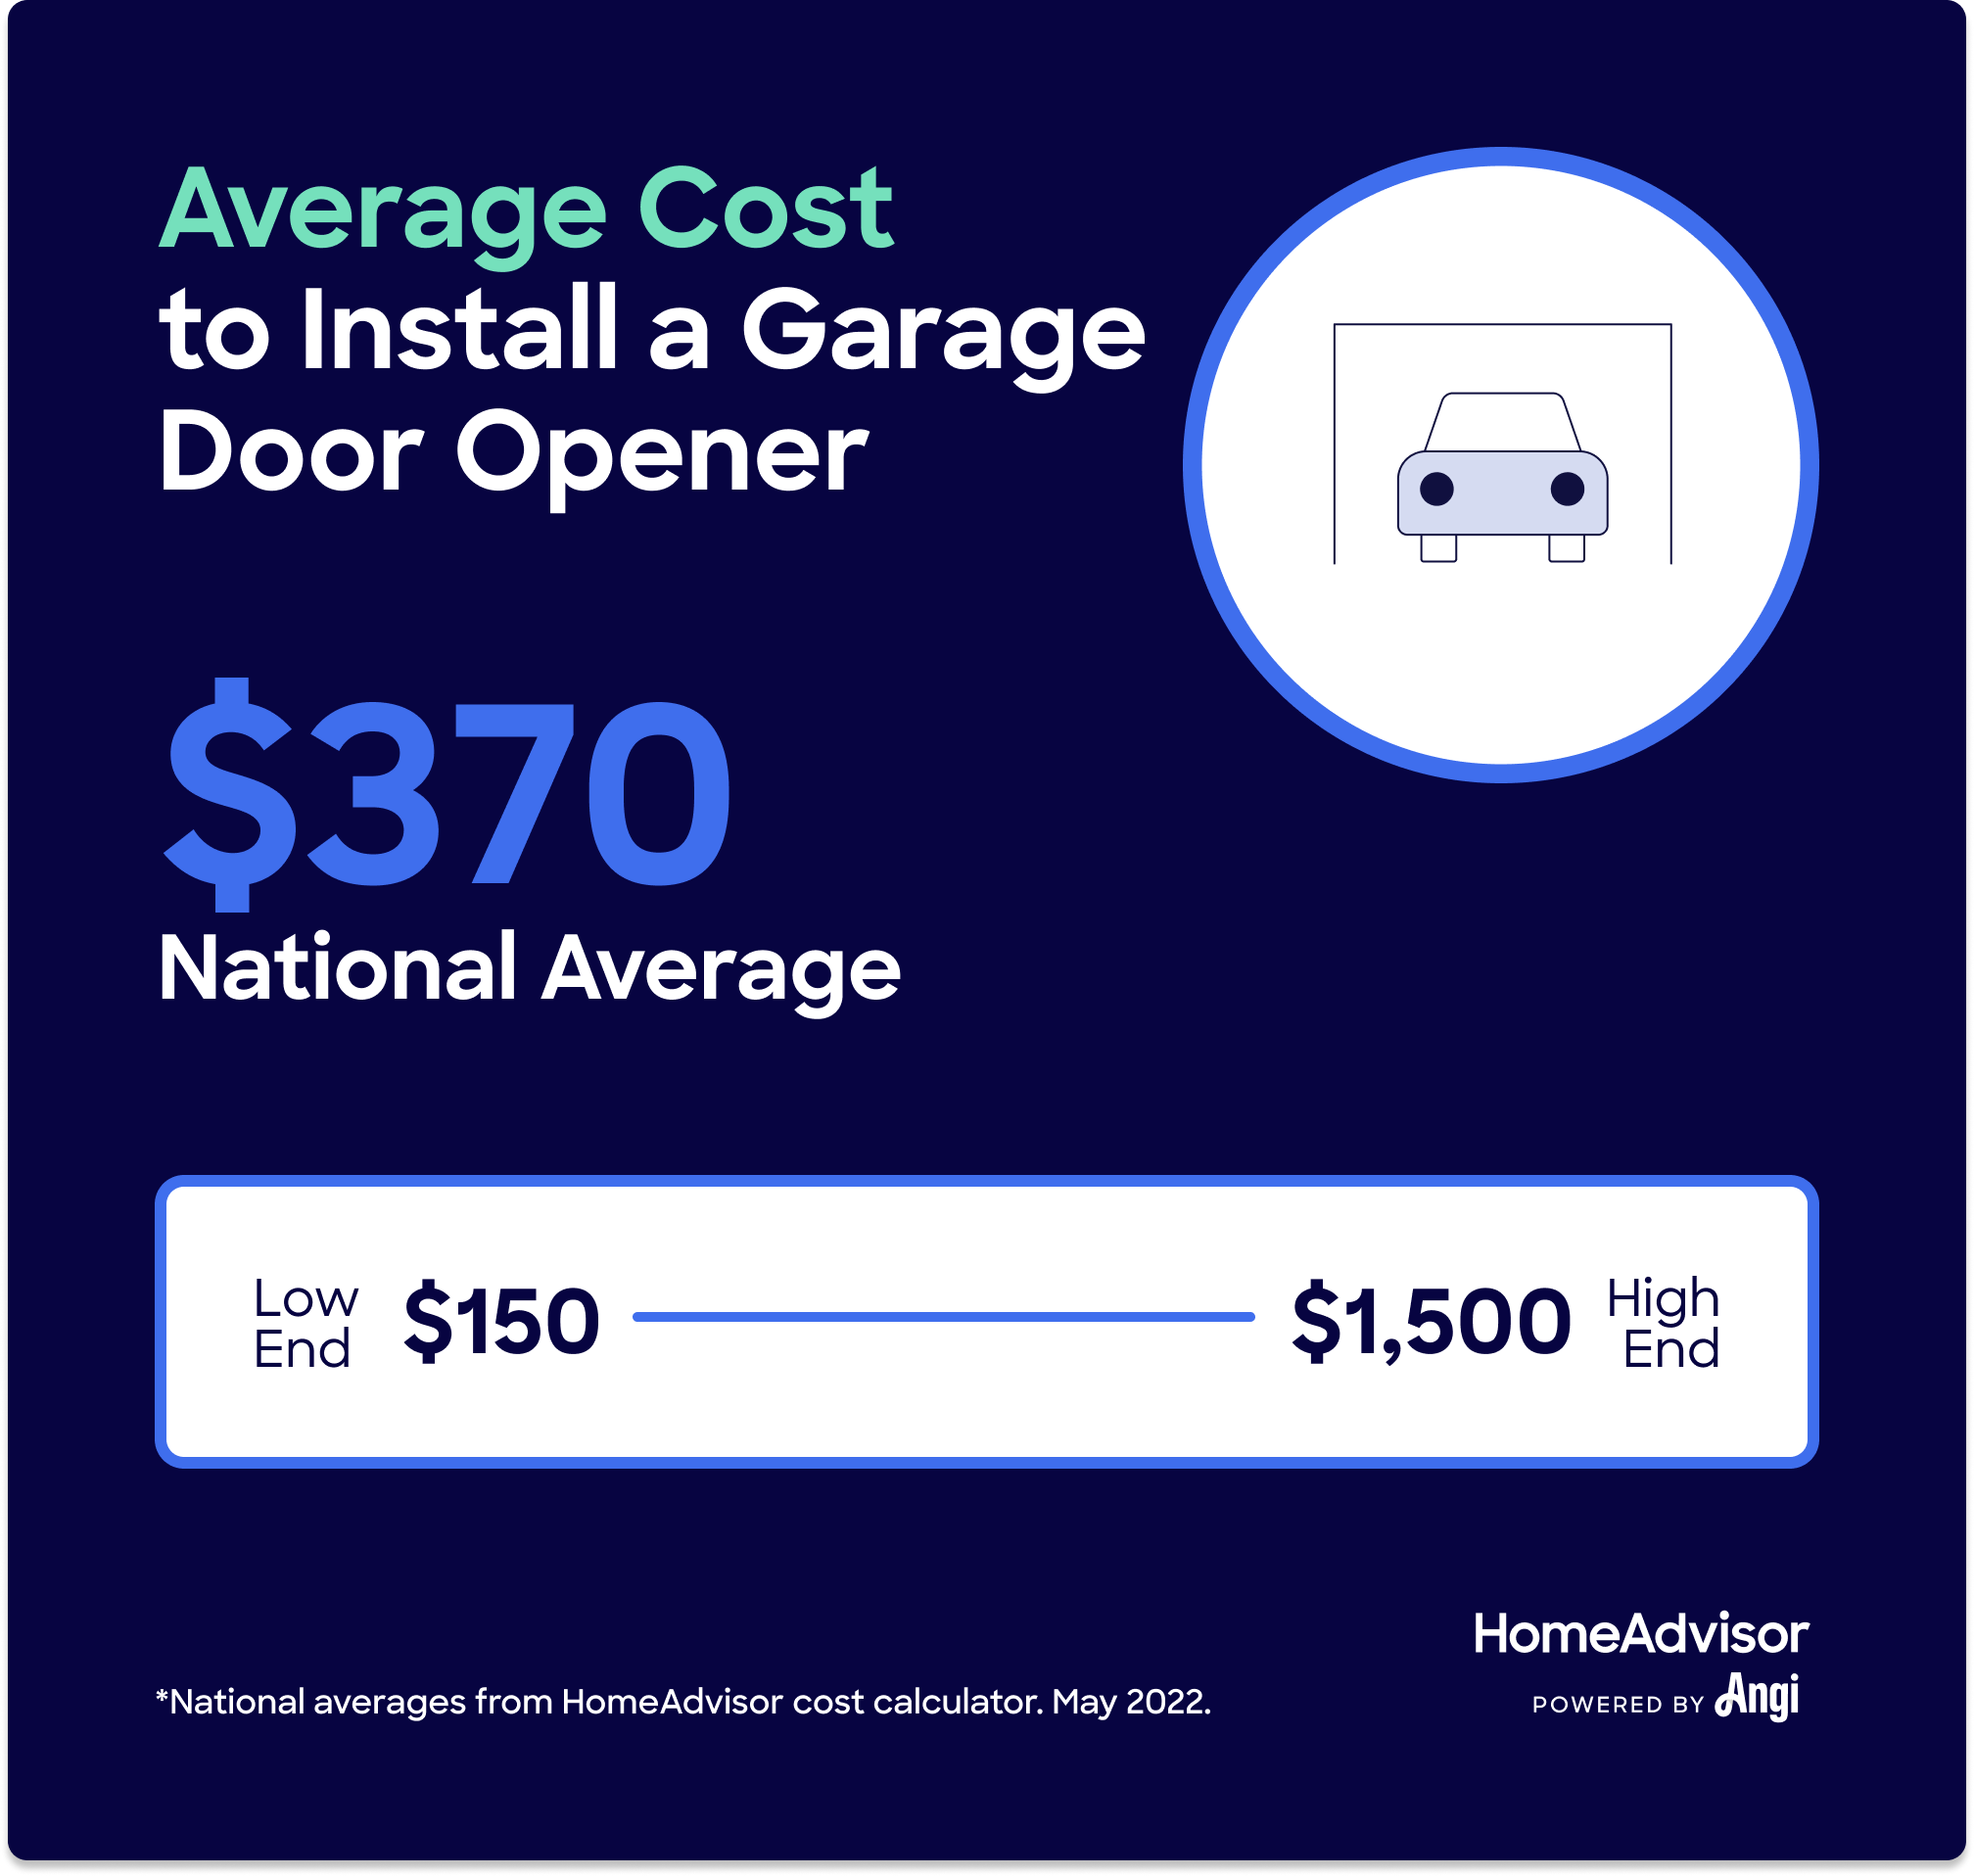 Quanto dovrebbe costare un nuovo apri della porta del garage?